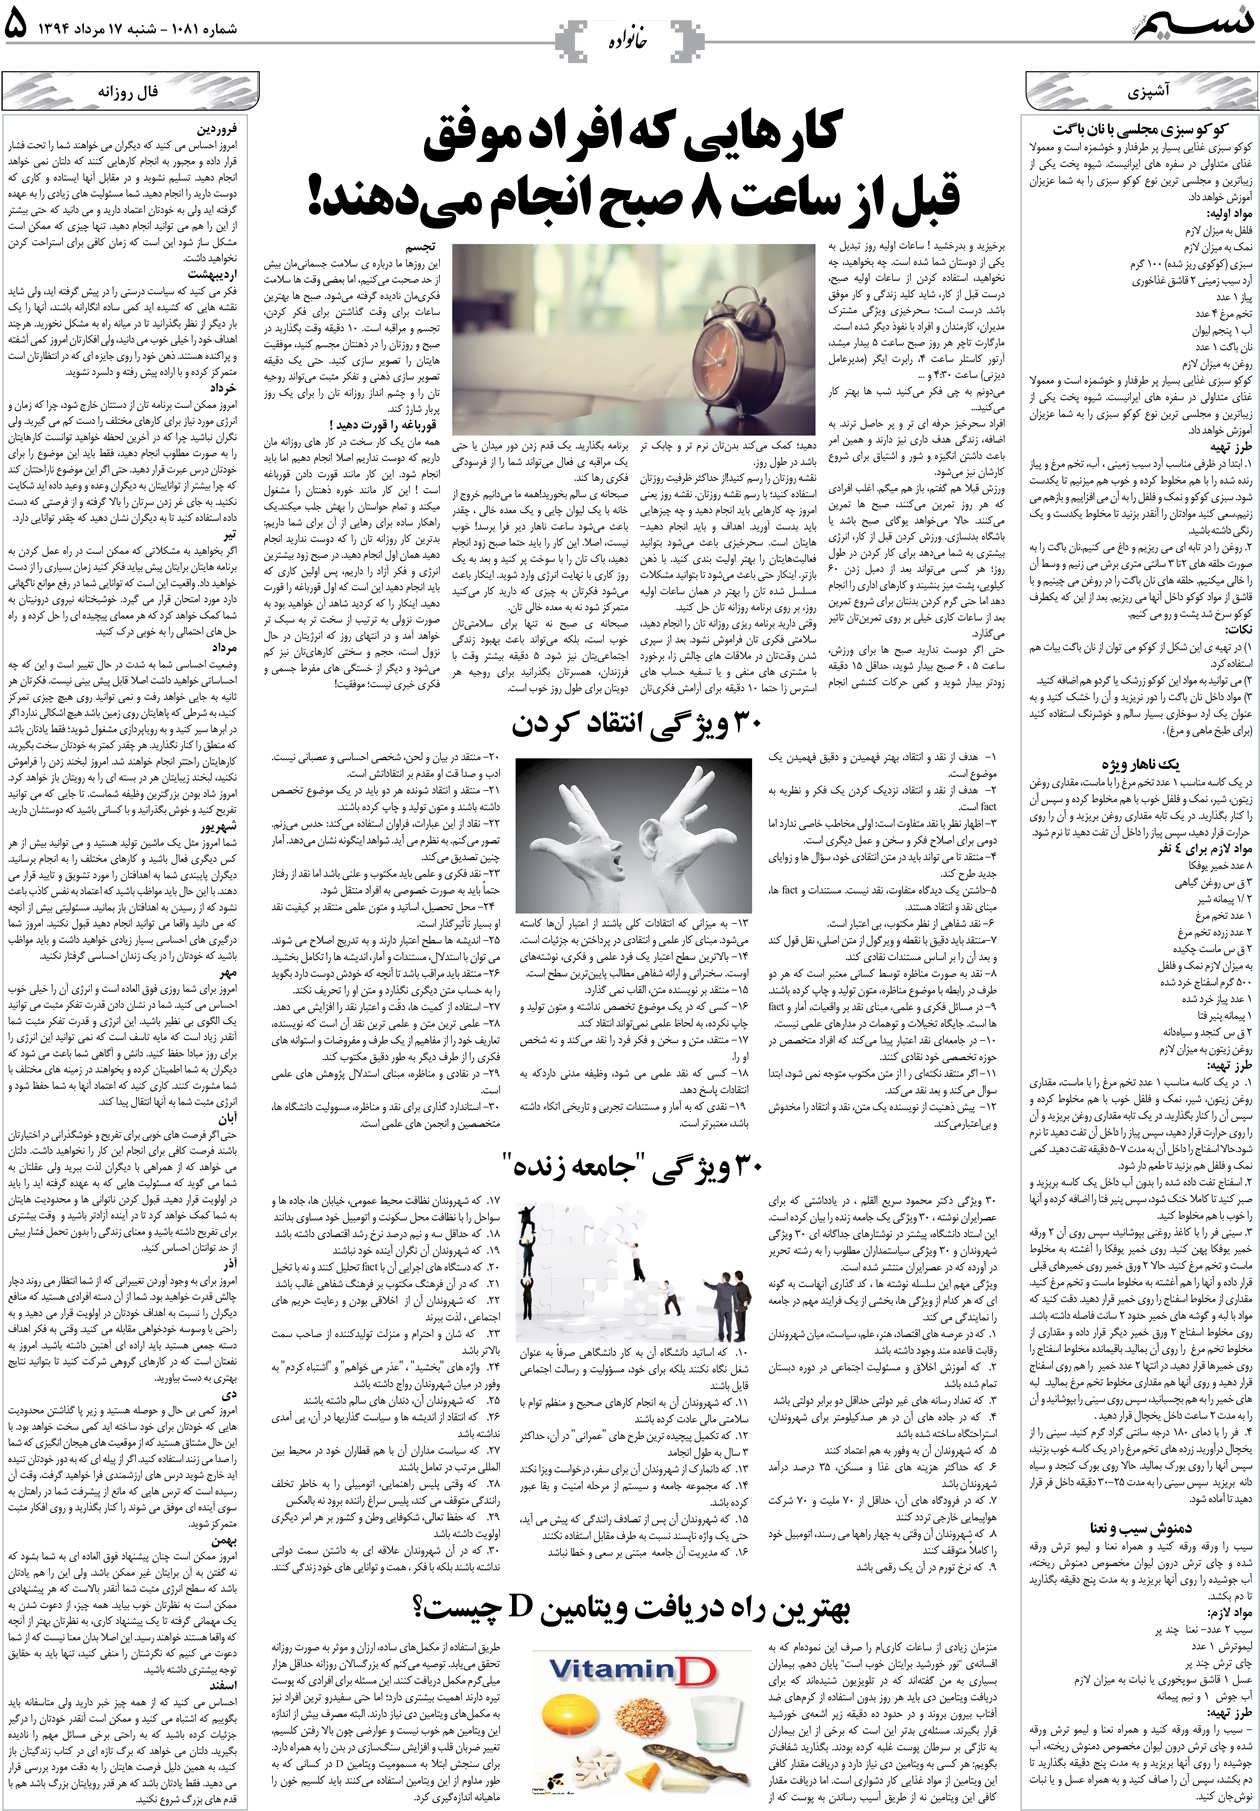 صفحه خانواده روزنامه نسیم شماره 1081